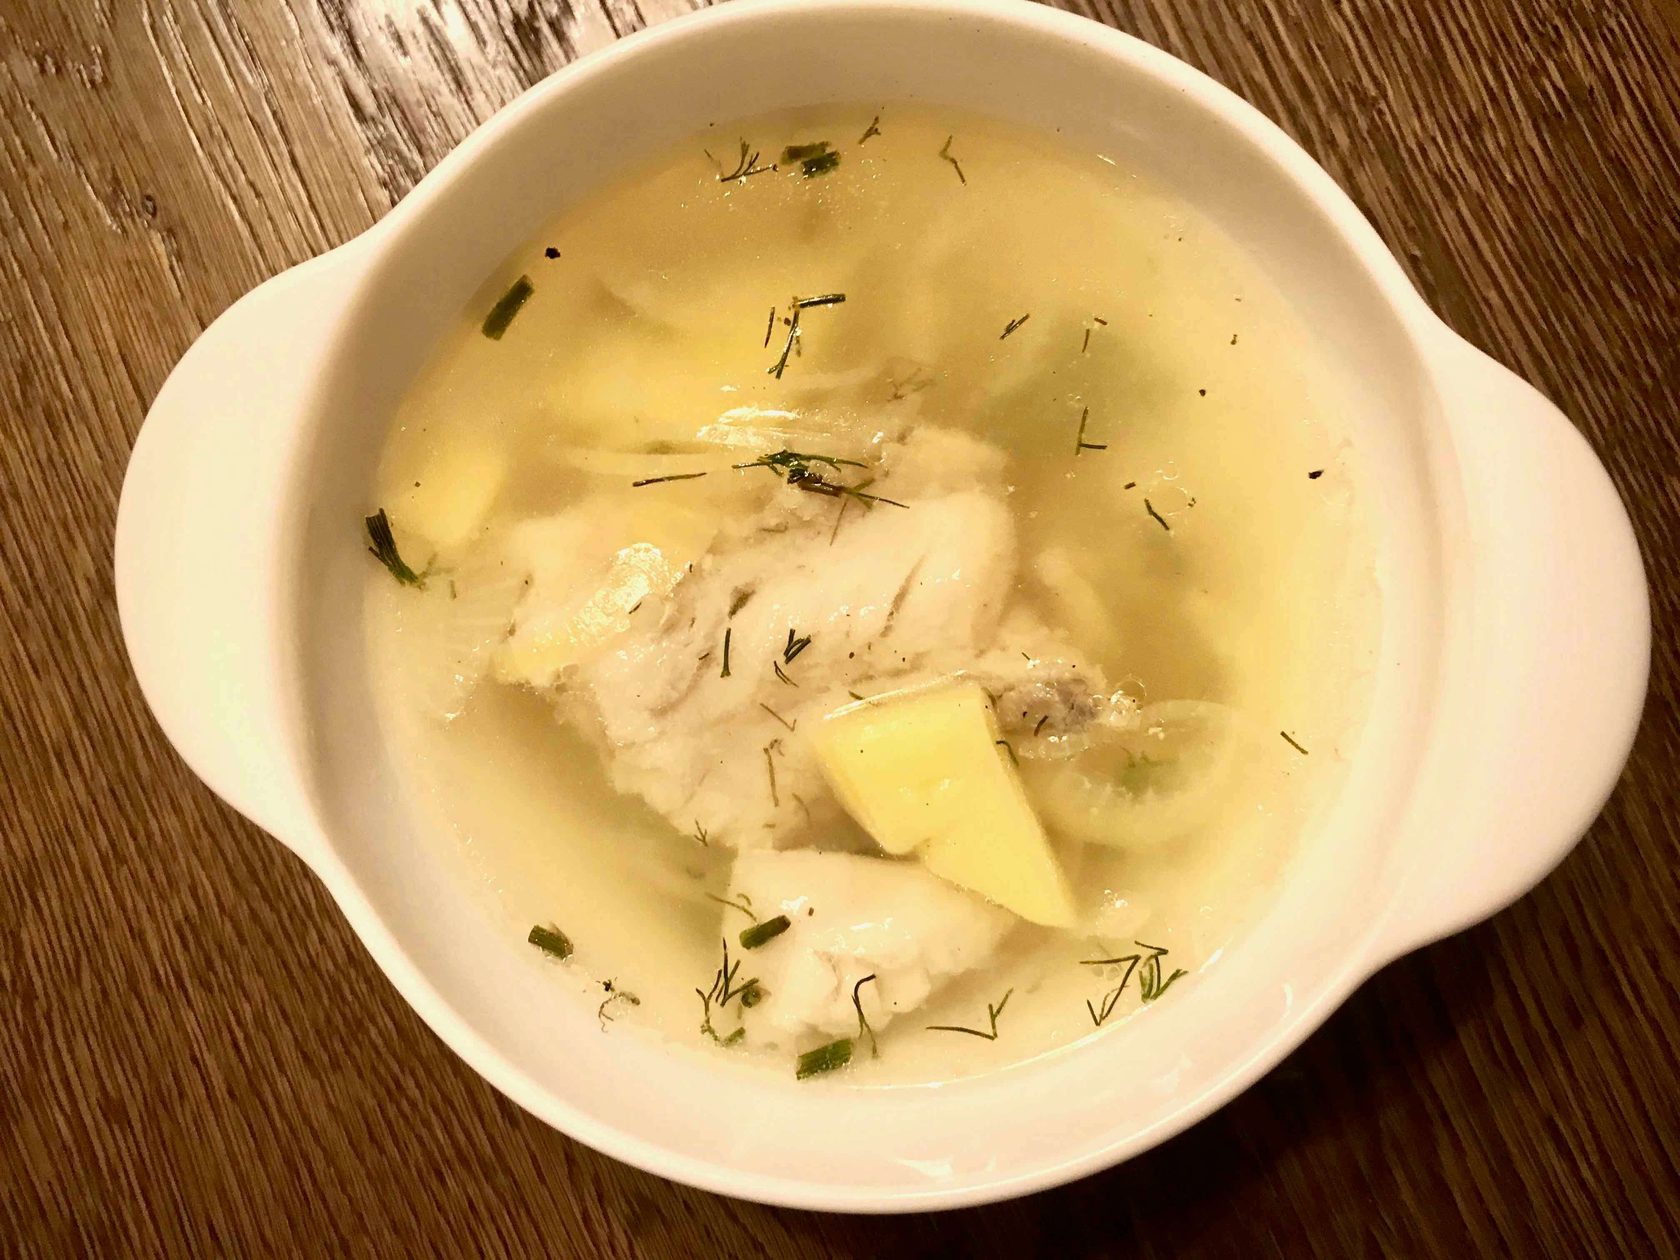 Receta de Ujá. Sopa de pescado típica rusa con pocos ingredientes.